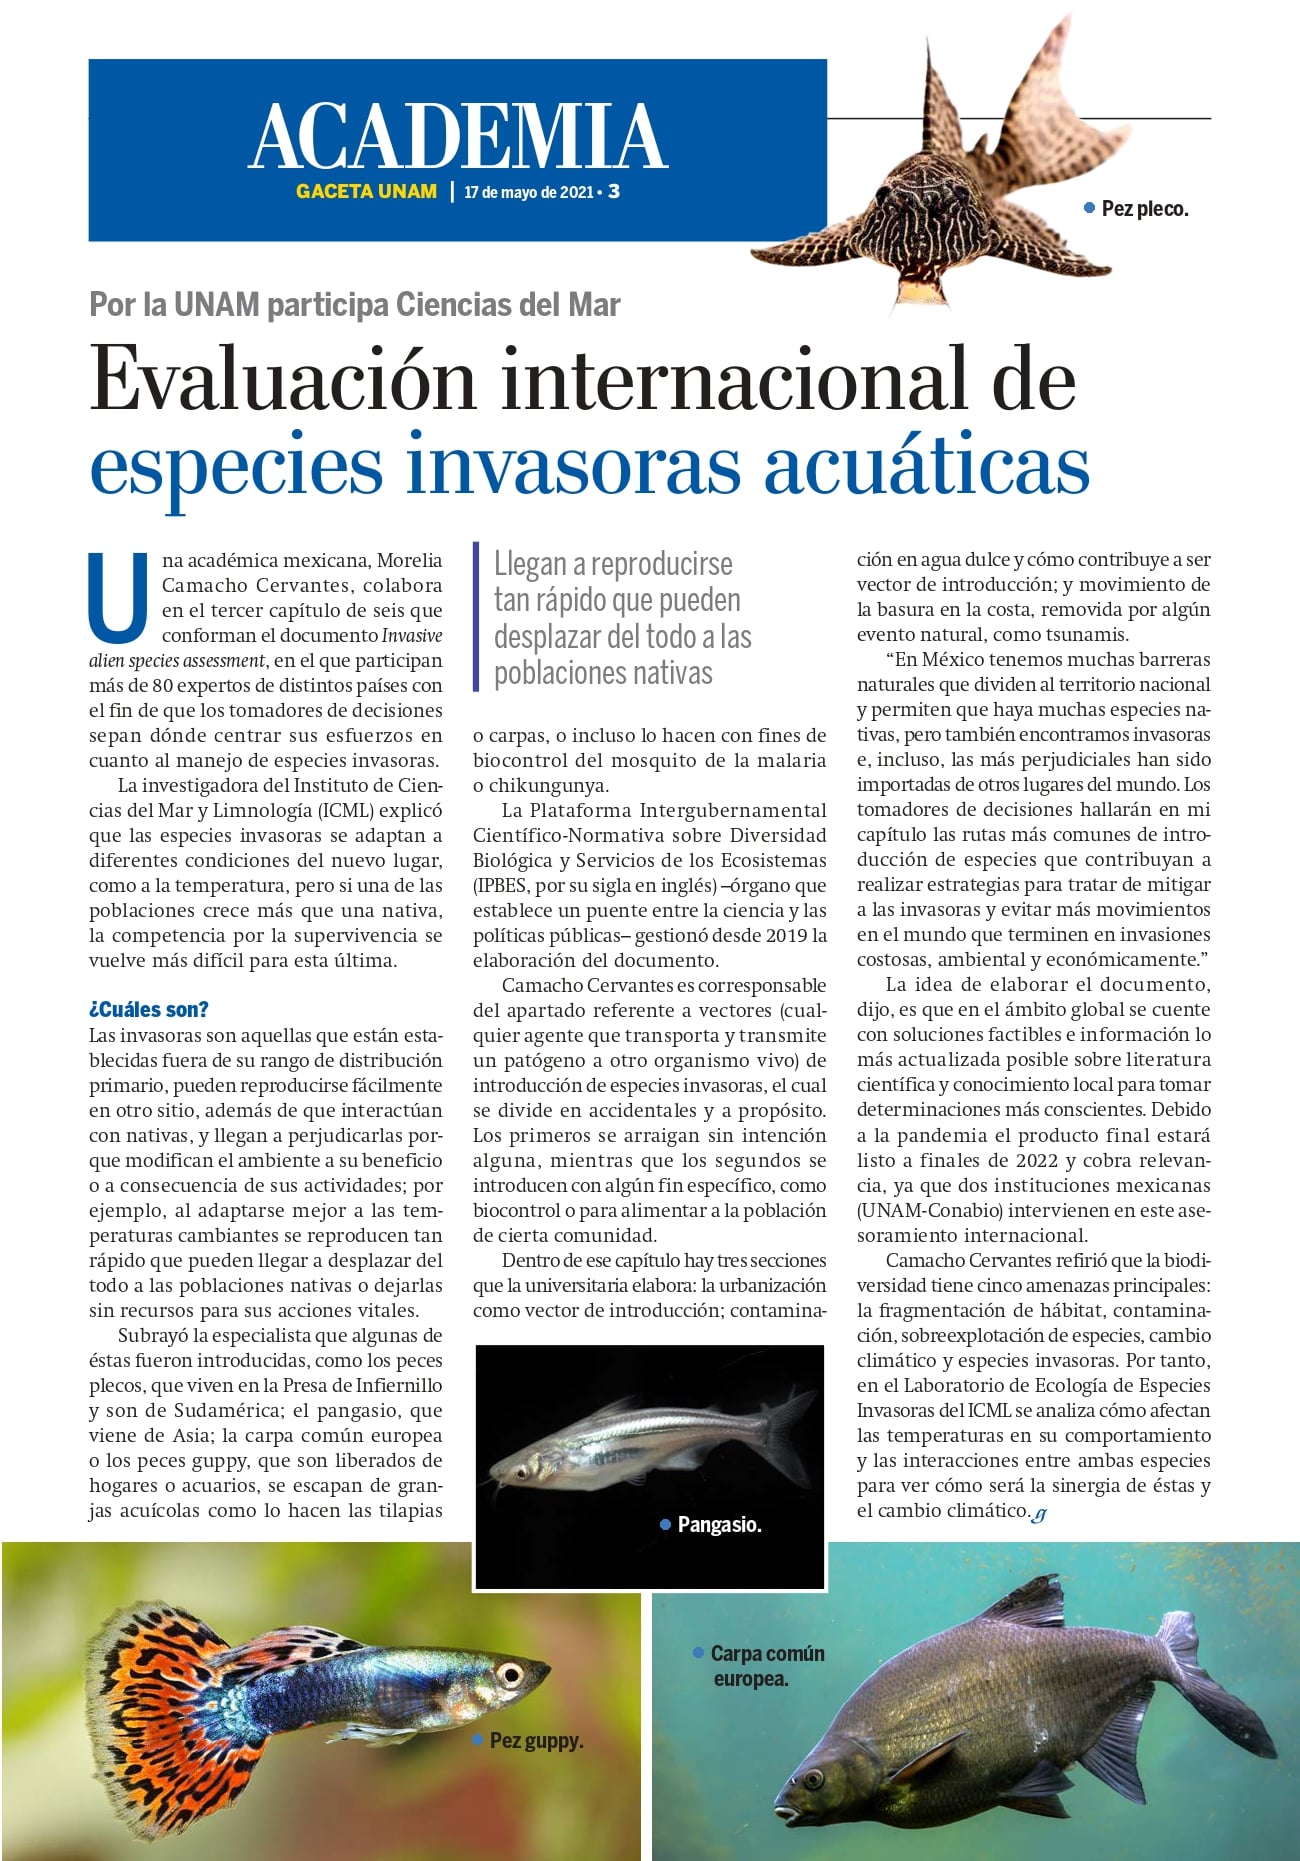 Evaluación internacional de especies invasoras acuáticas